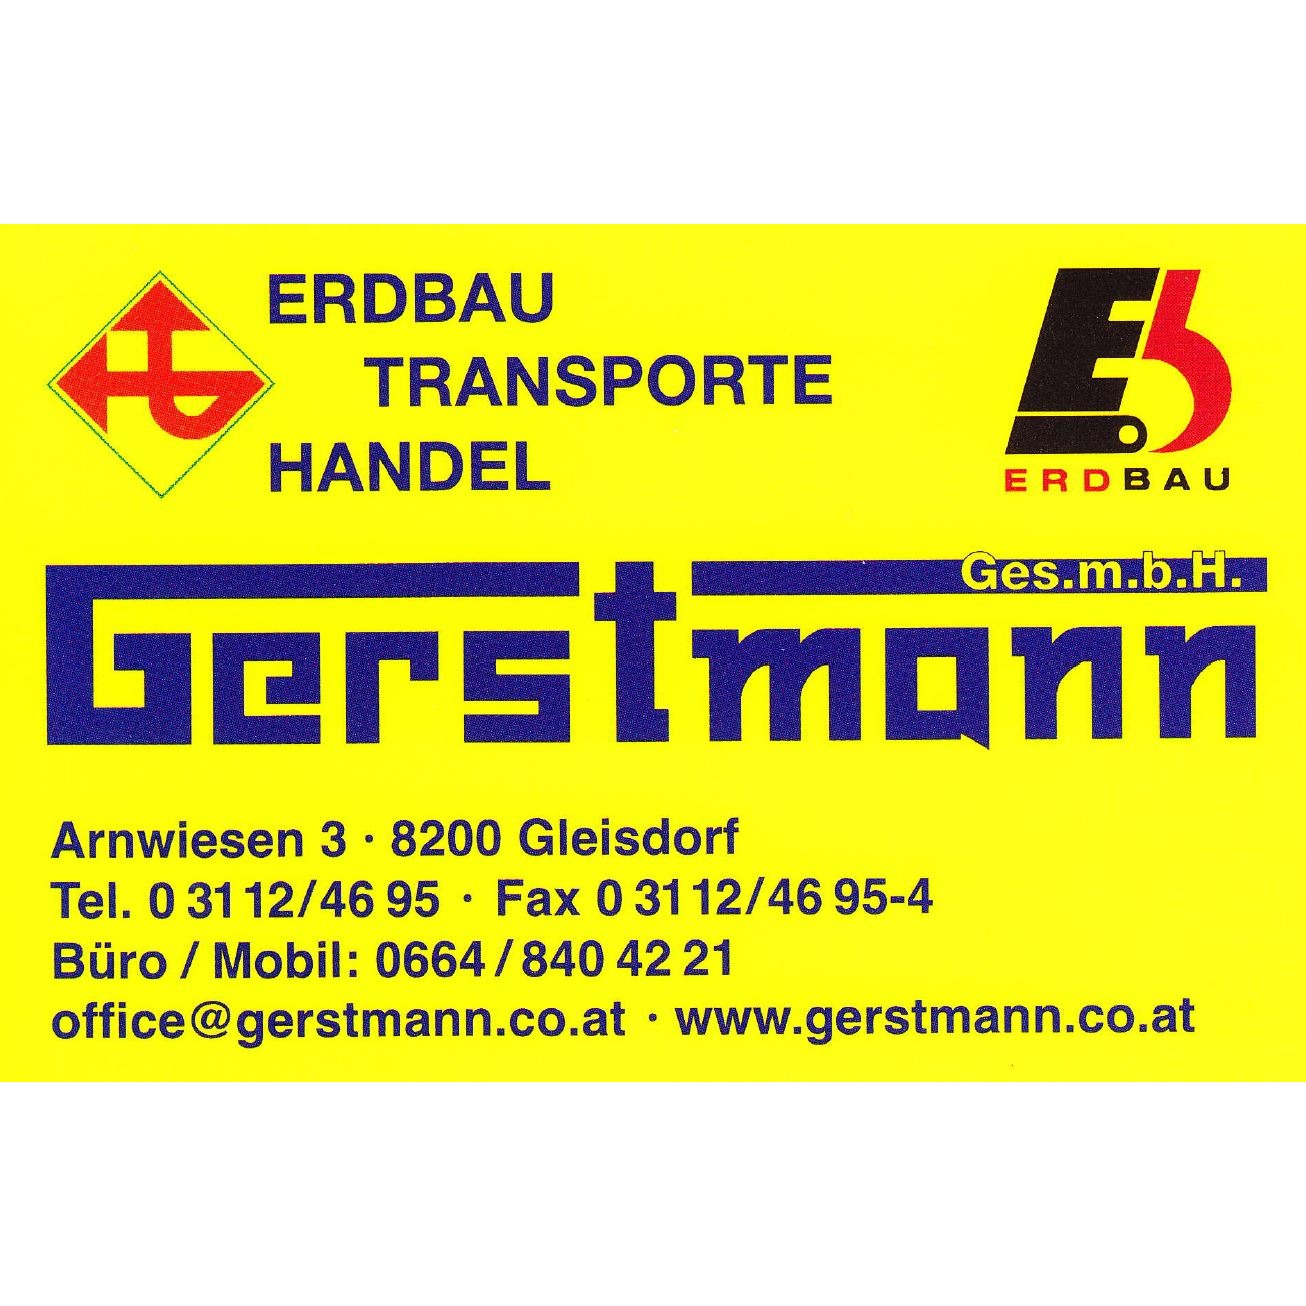 Gerstmann GesmbH- Erdbau - Transporte -Handel Logo